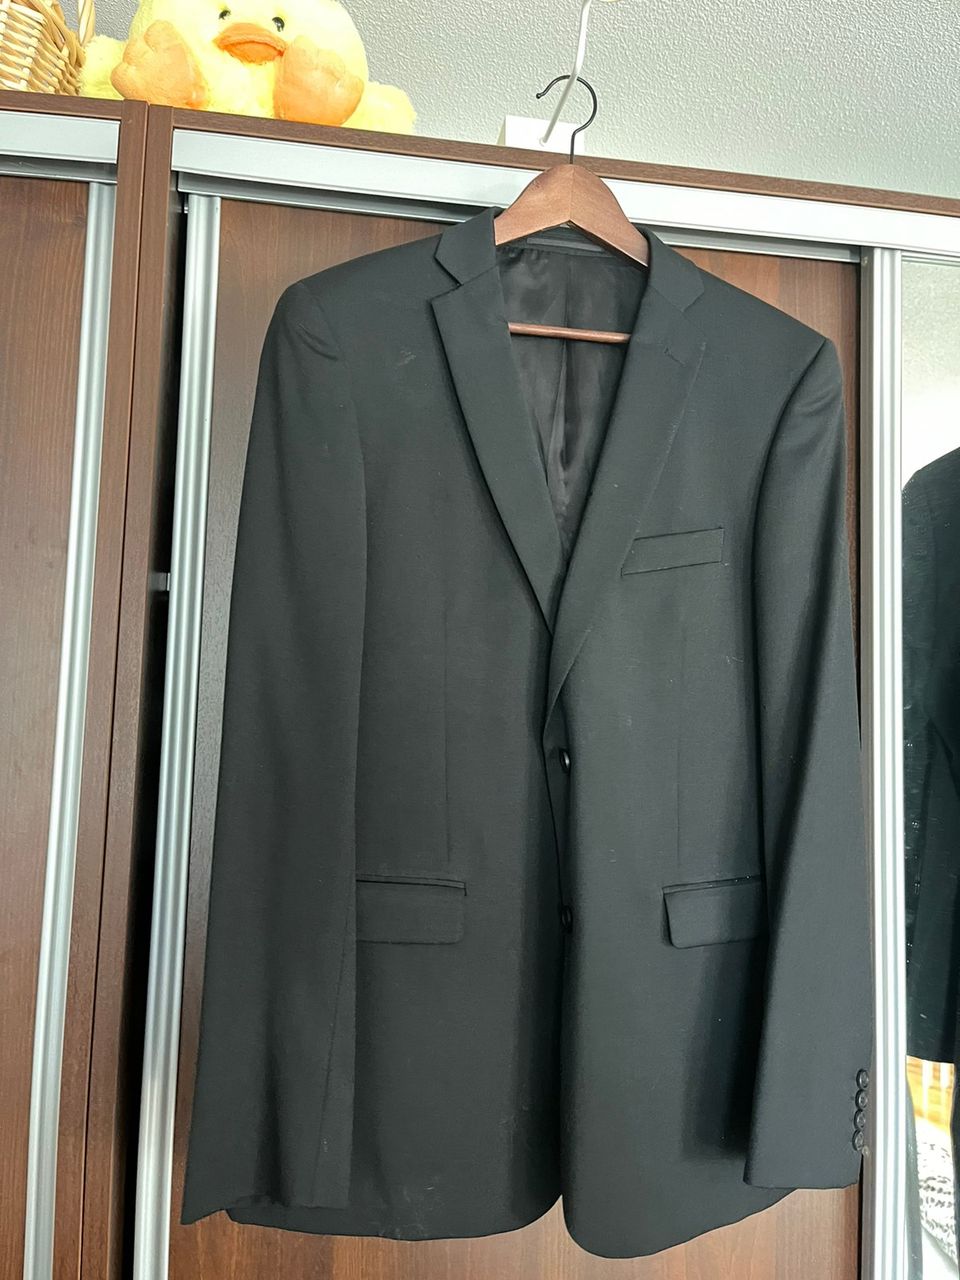 Musta puvun takki